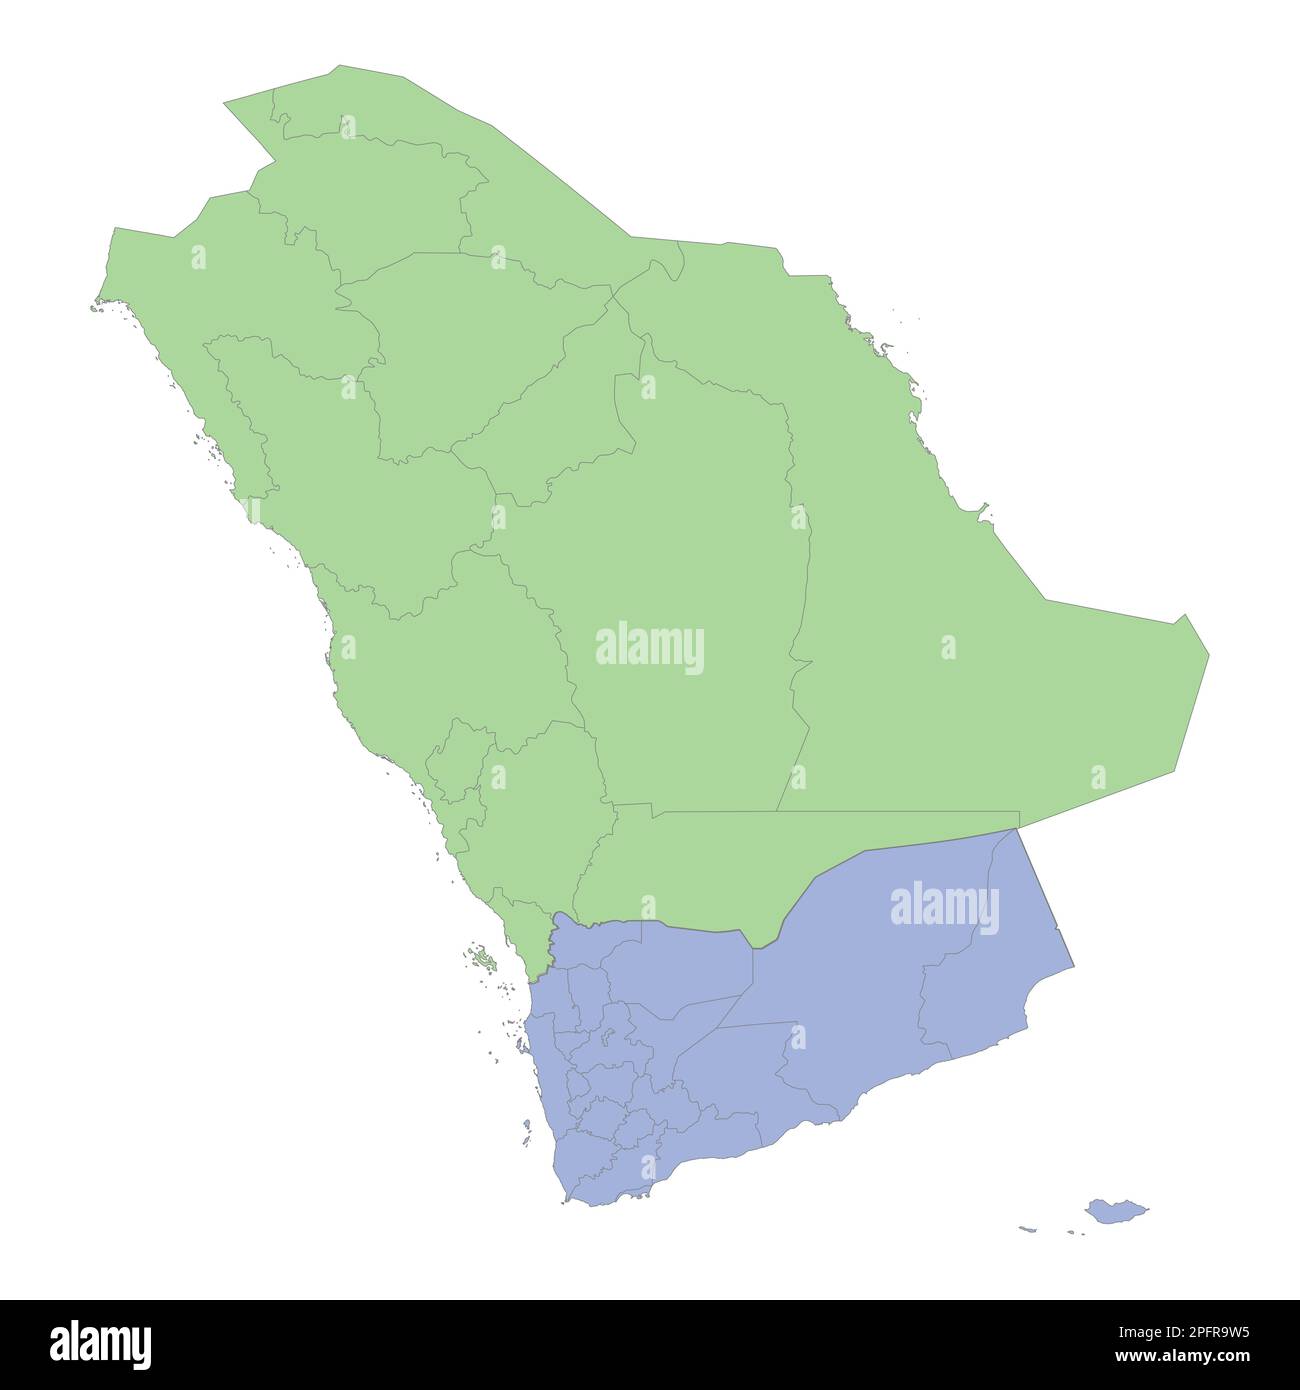 Mappa politica di alta qualità dell'Arabia Saudita e dello Yemen con i confini delle regioni o delle province. Illustrazione vettoriale Illustrazione Vettoriale